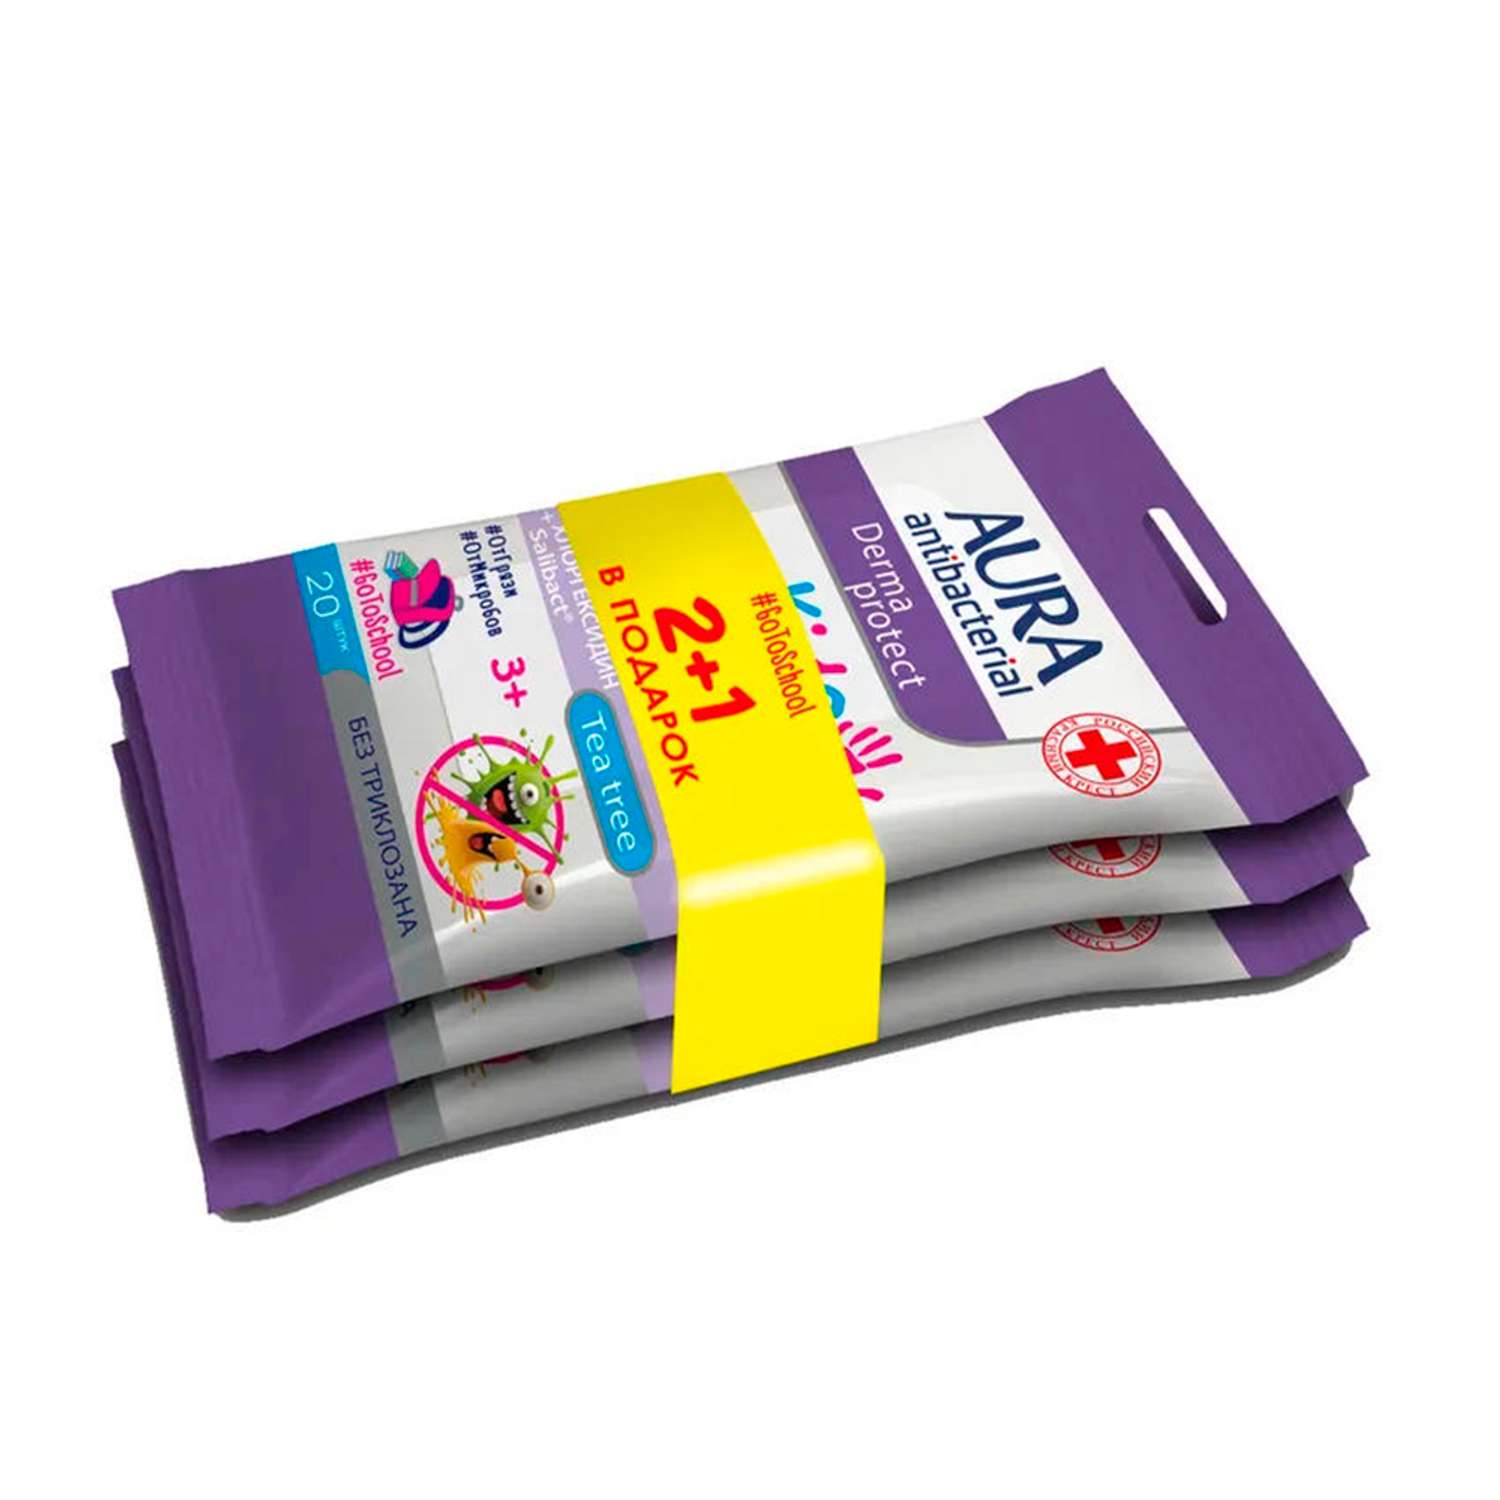 Влажные салфетки AURA Antibacterial Derma protect kids детские 3+ pocket-pack 20шт х 2 + 1 в подарок - фото 2